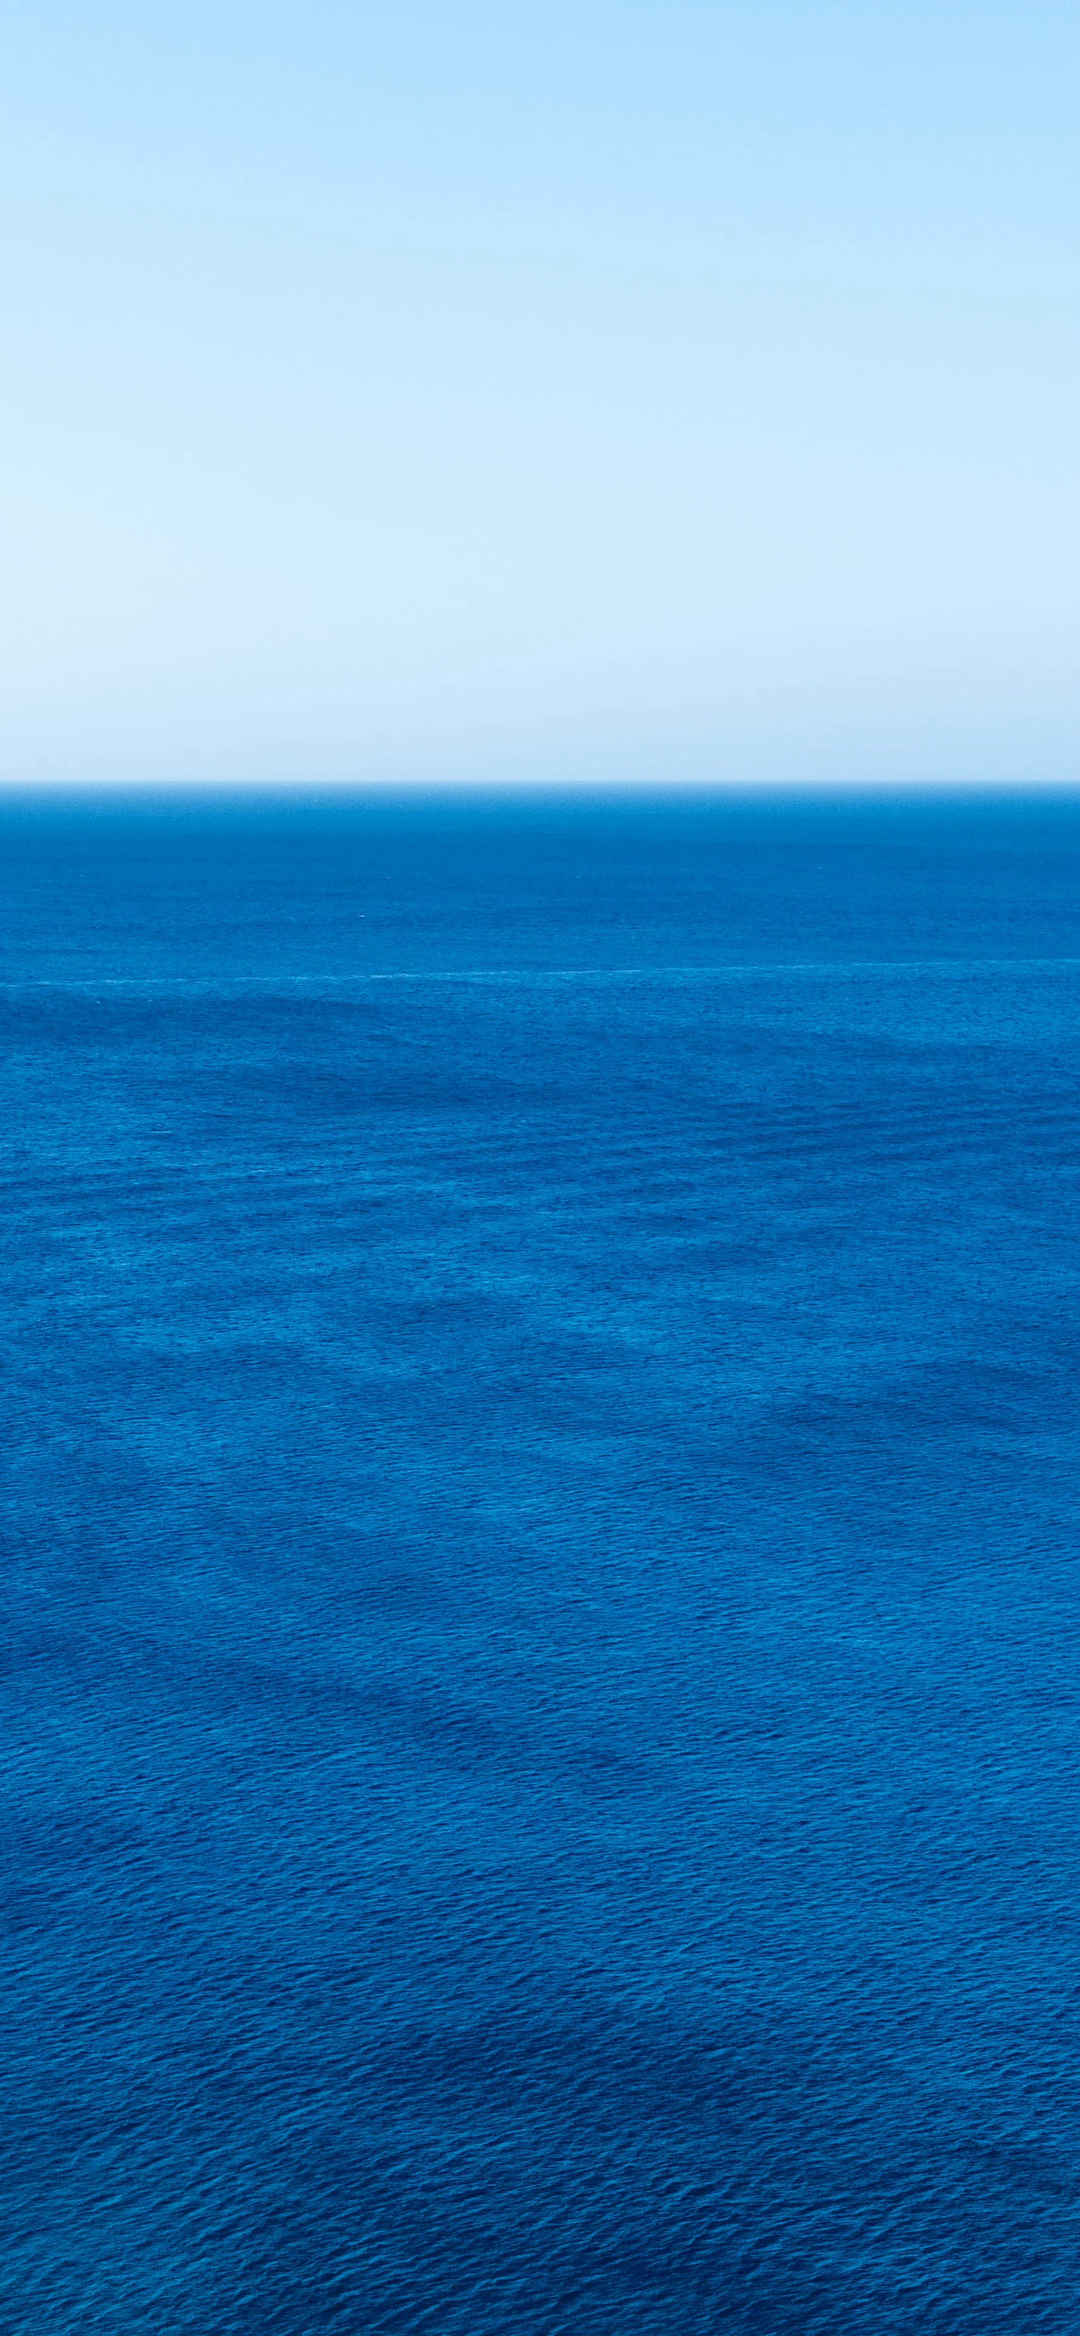 唯美蓝色海洋景深效果手机壁纸